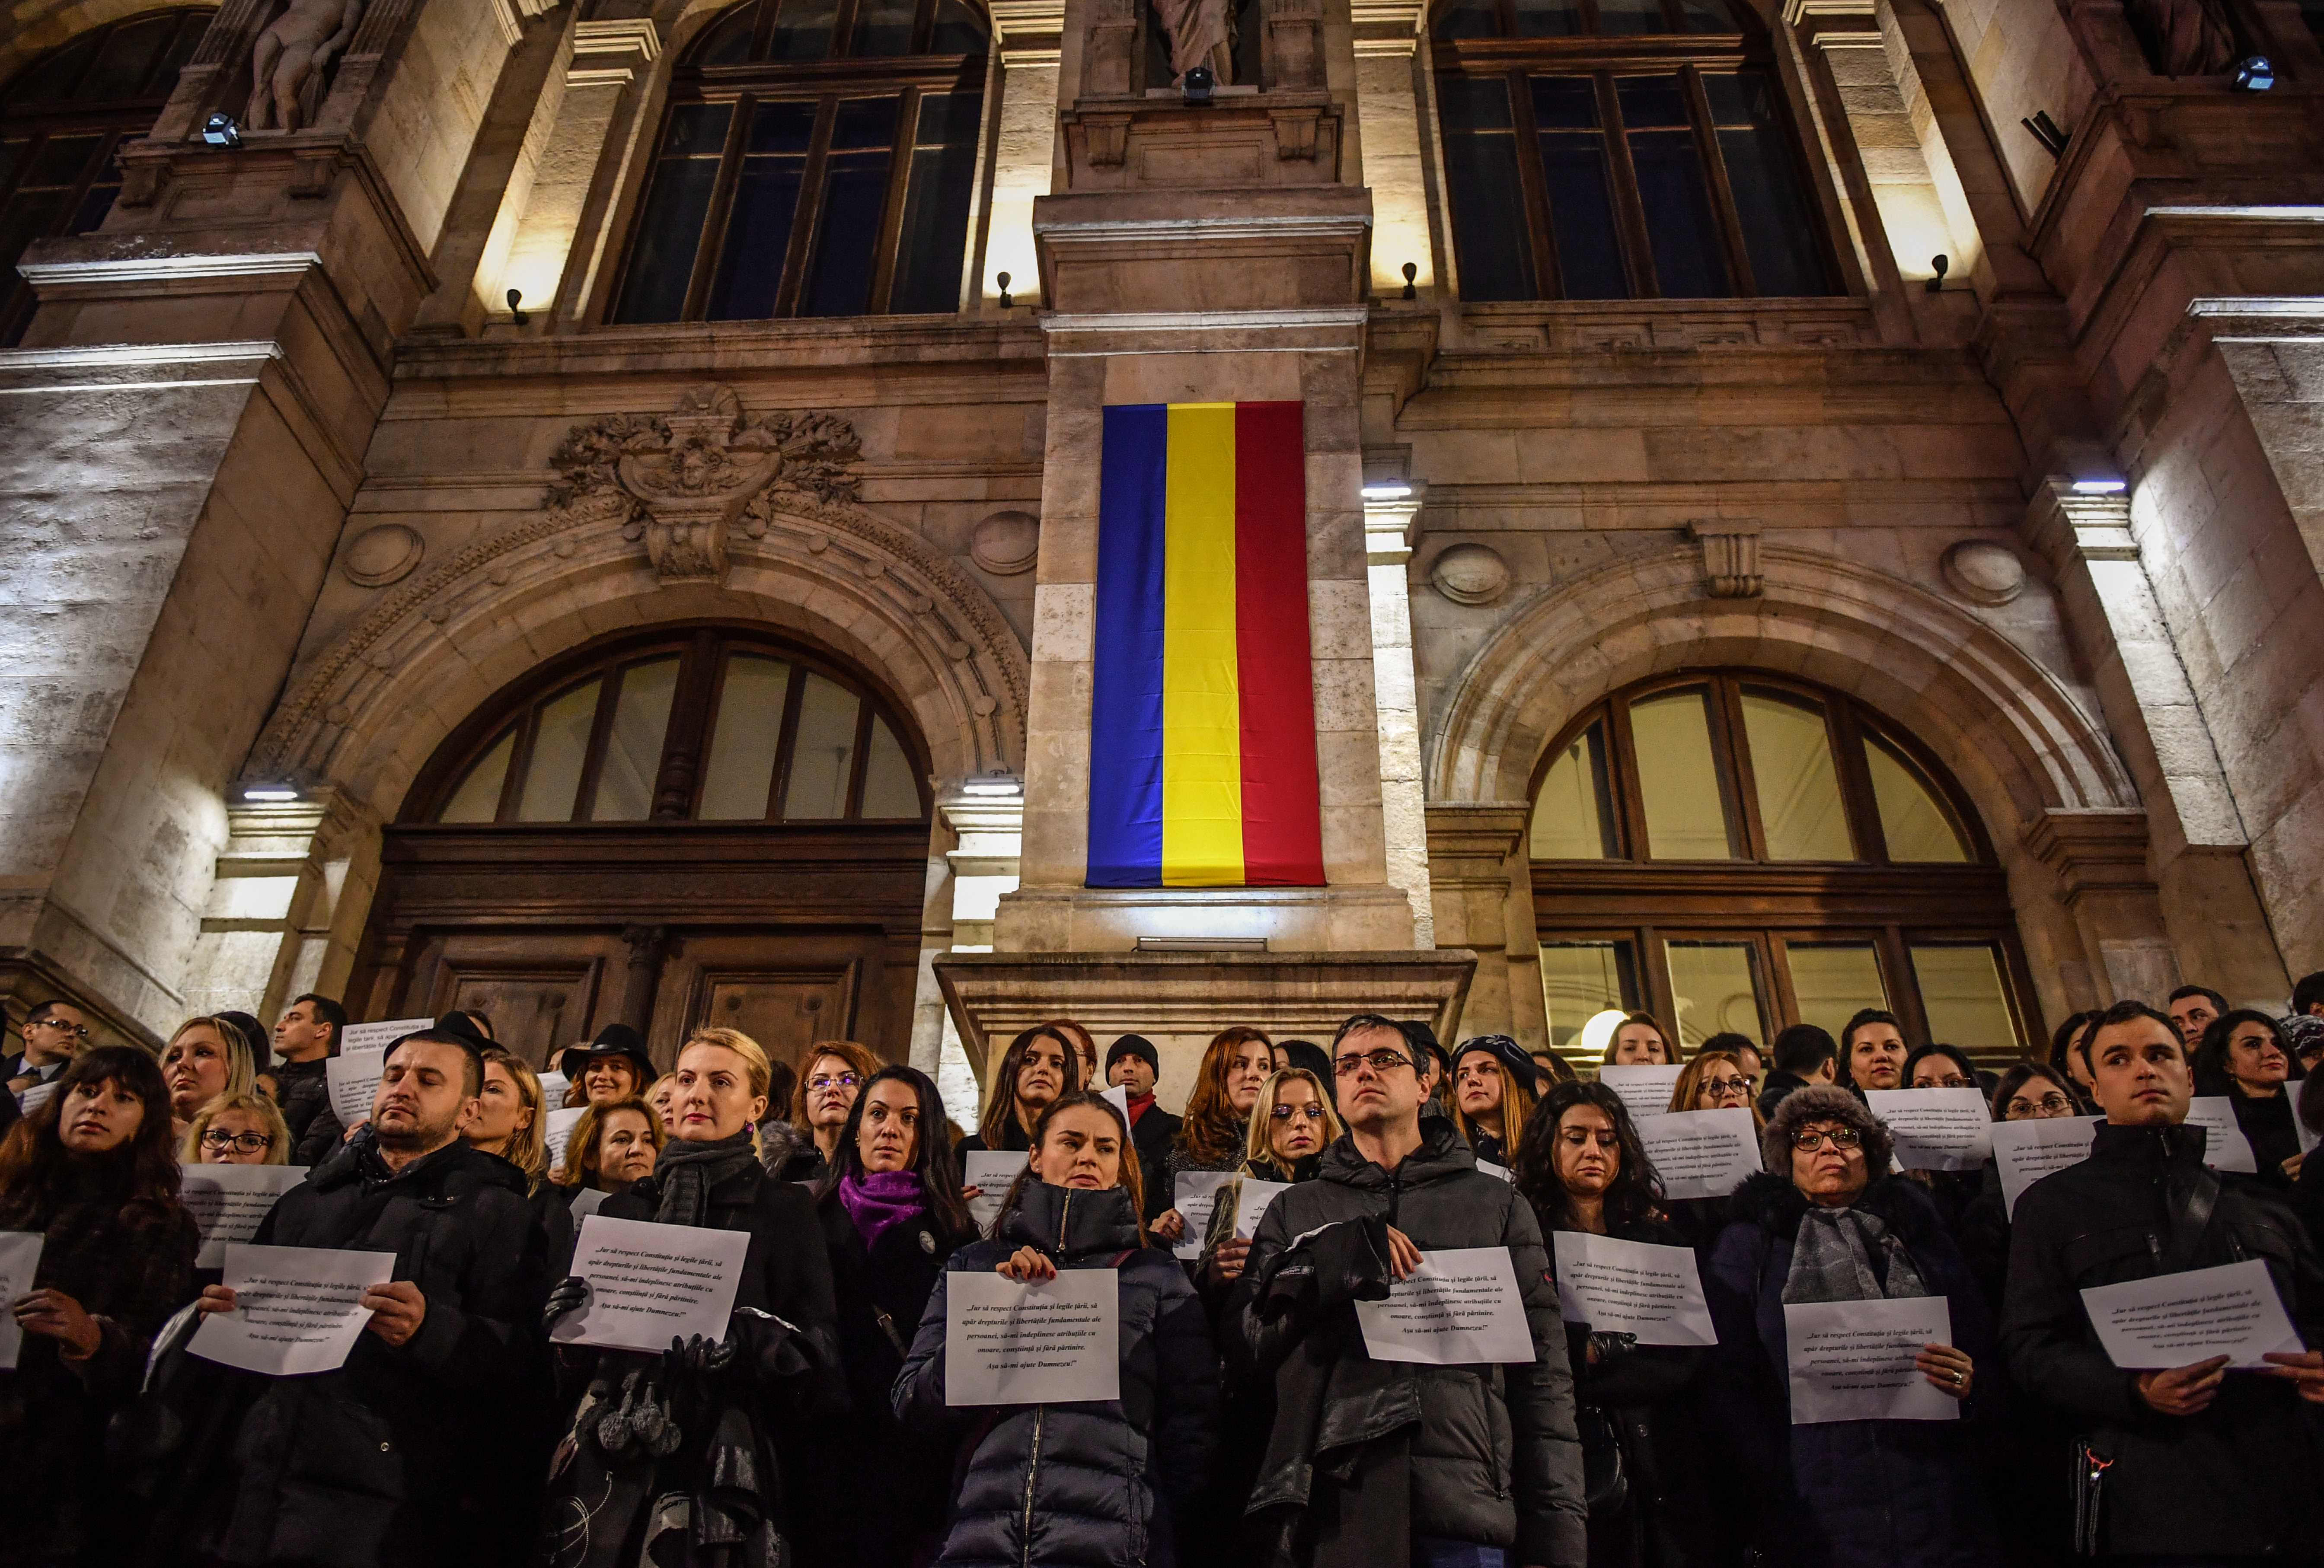 قضاة رومانيا يتظاهرون احتجاجا على تغييرات بالنظام القانونى بالبلاد